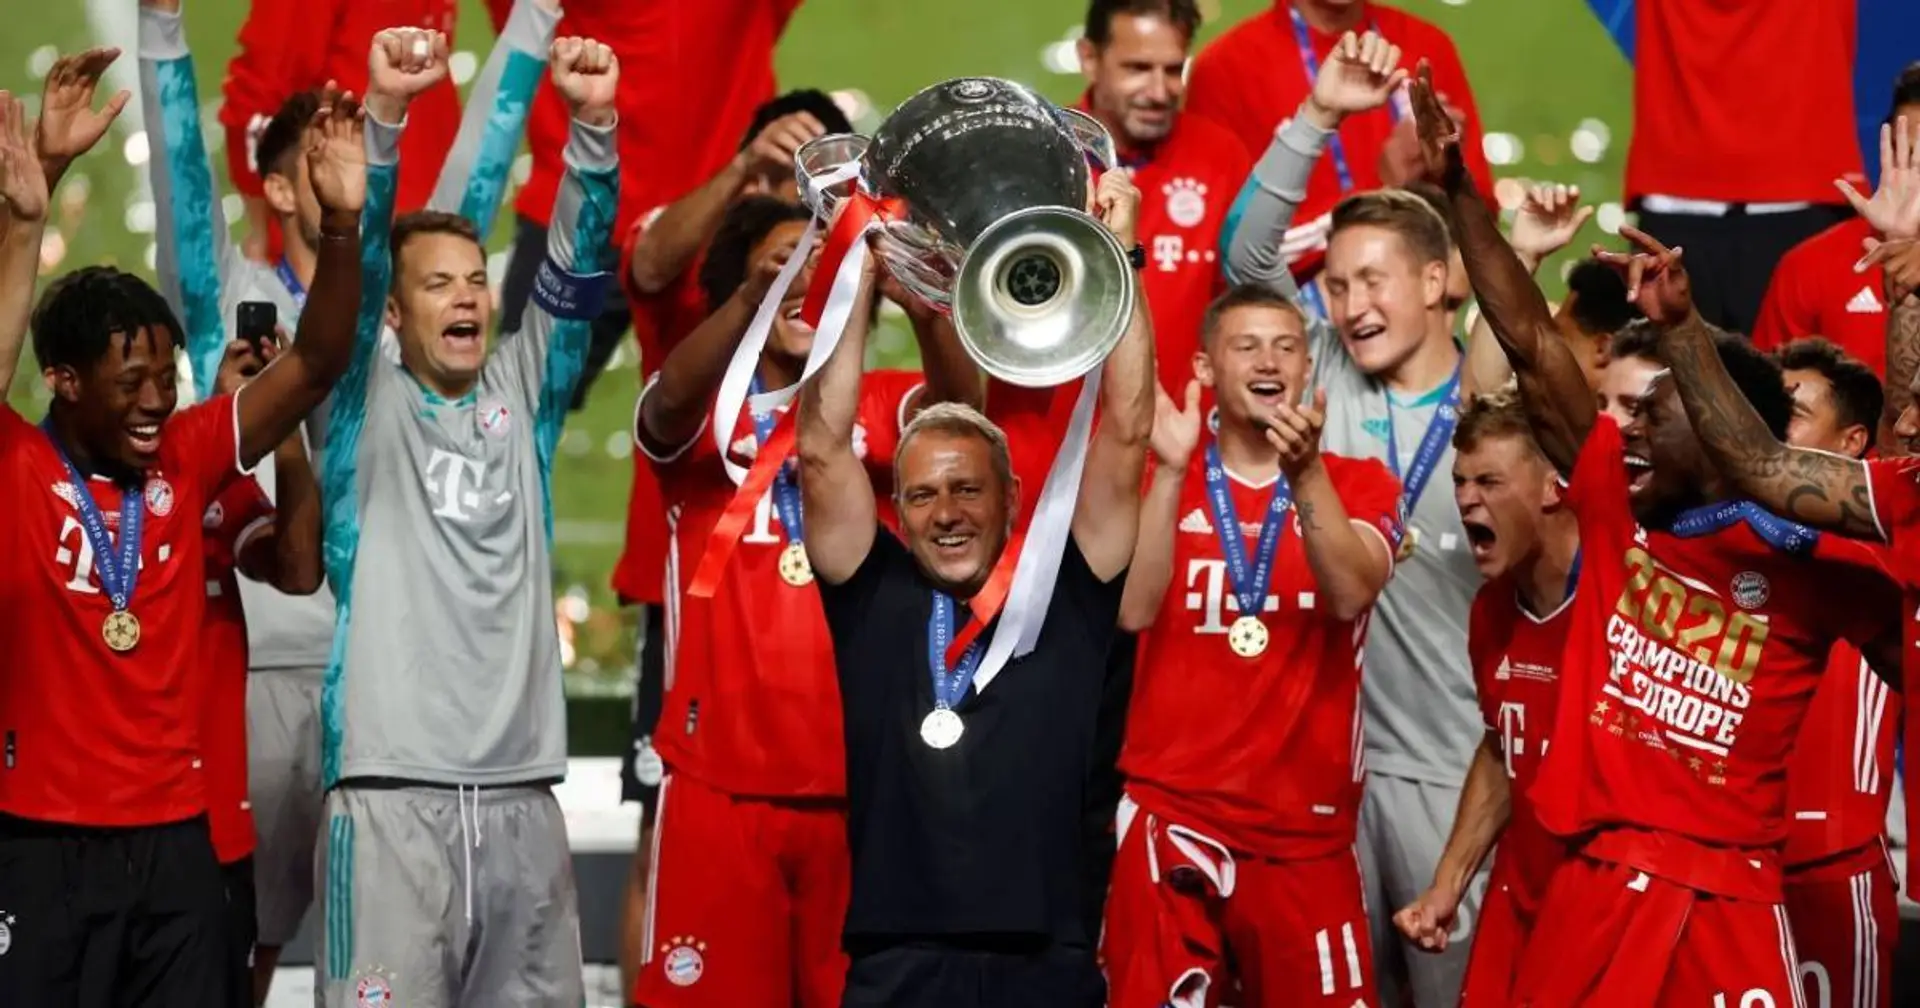 Flick über die Champions League: "Haben von Anfang an gewusst, dass wir gewinnen können"